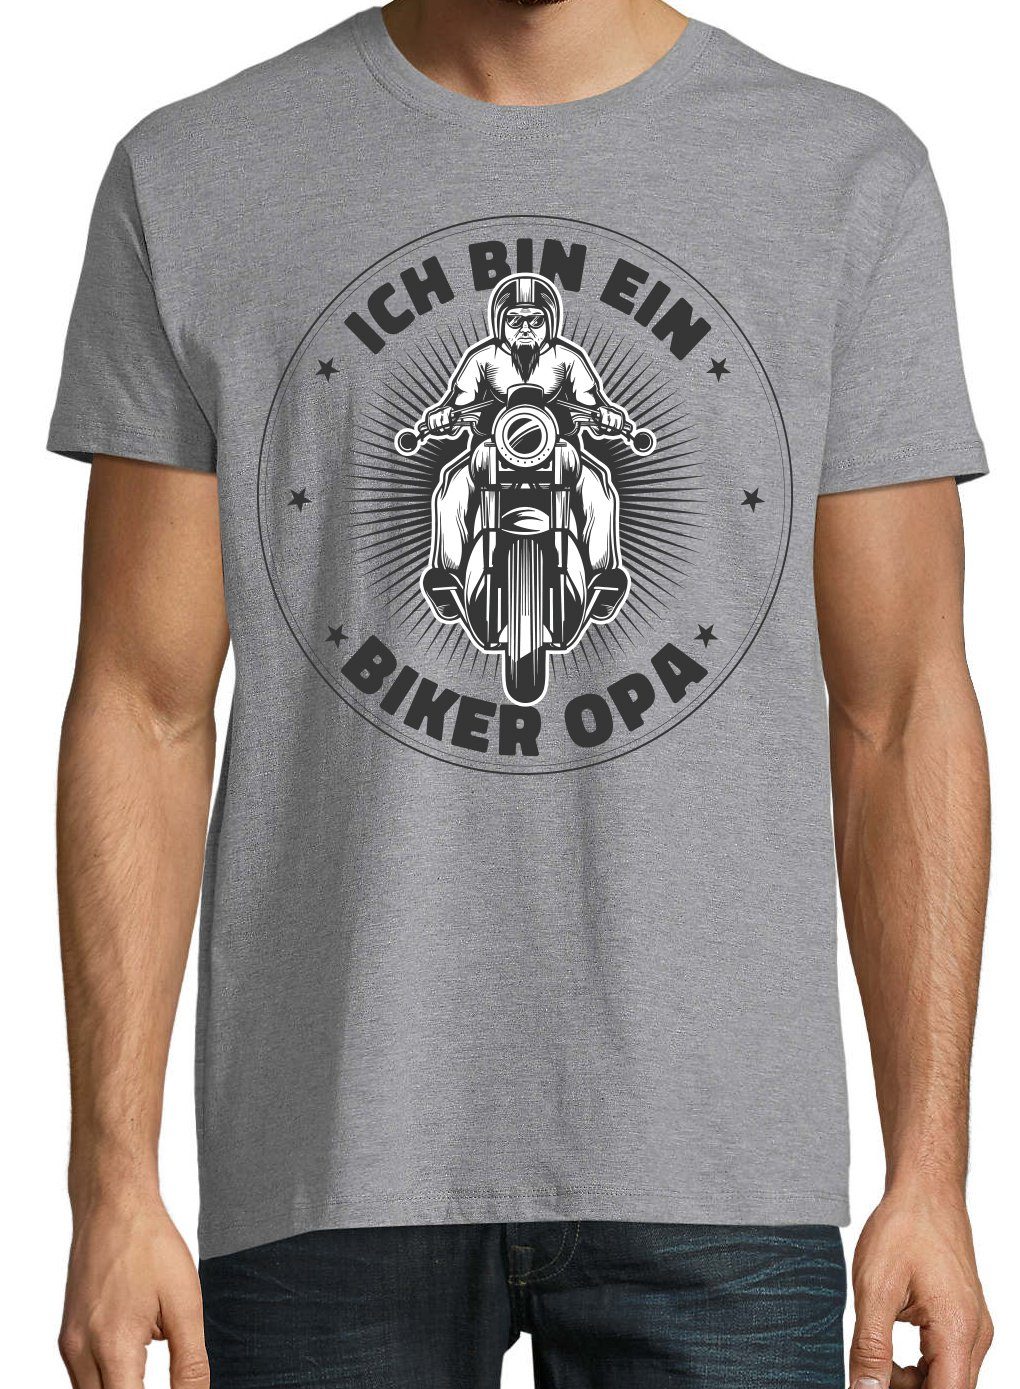 Youth Designz Opa" Ein Frontprint Biker "Ich Herren Grau T-Shirt trendigem Bin mit Shirt